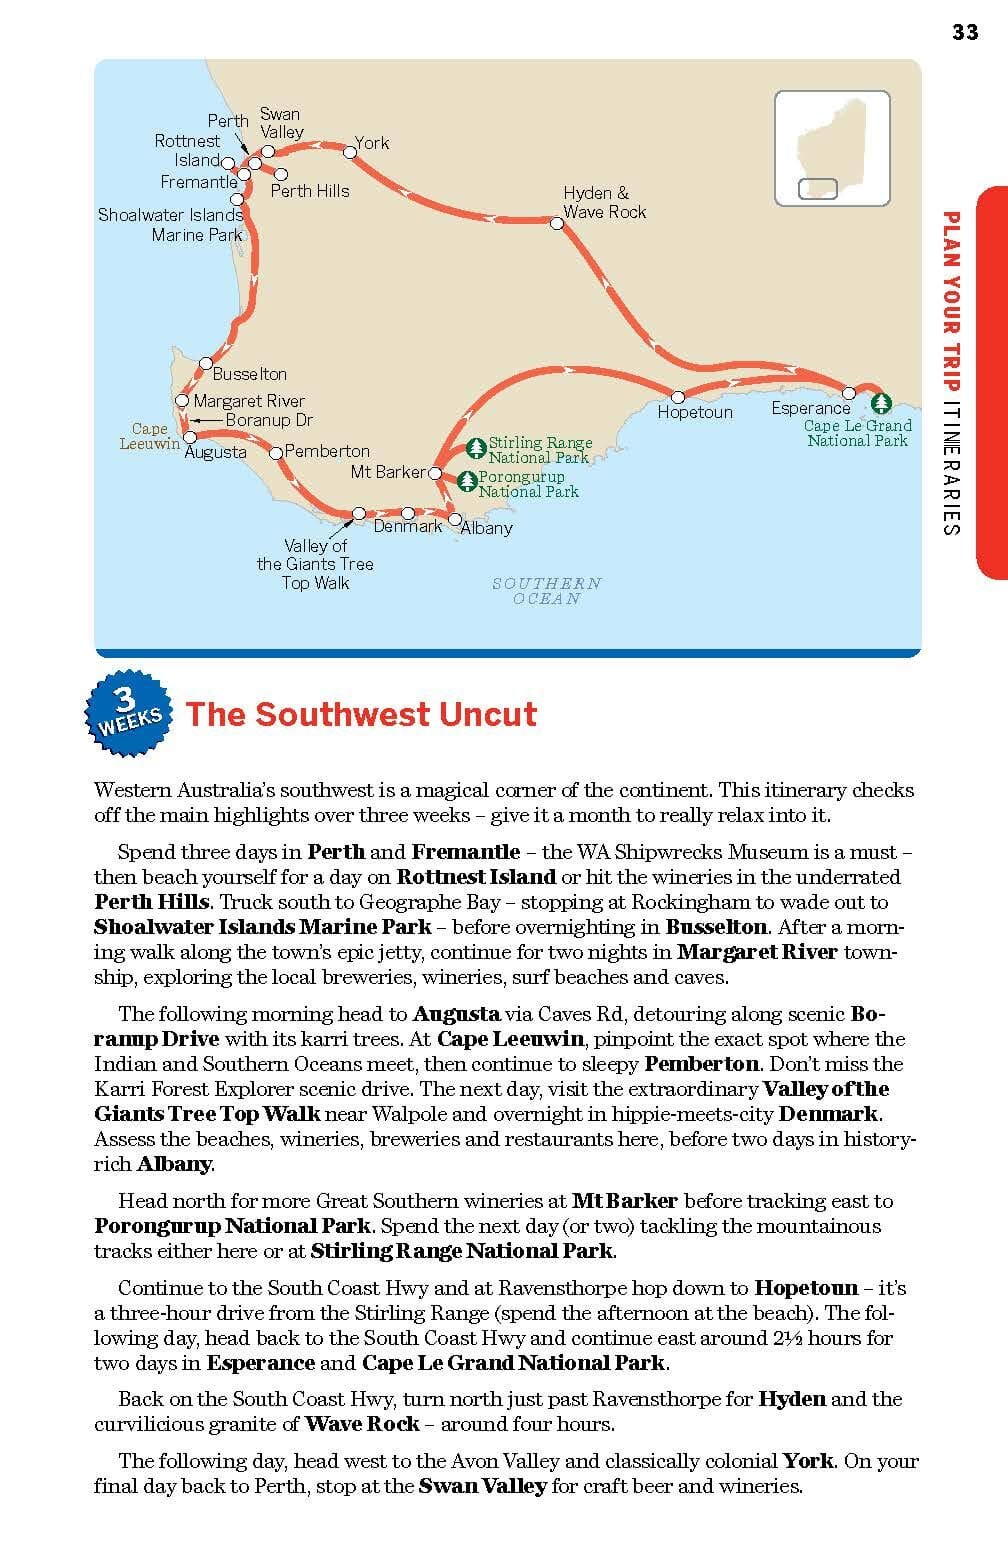 Guide de voyage (en anglais) - West Coast Australia | Lonely Planet guide de voyage Lonely Planet EN 